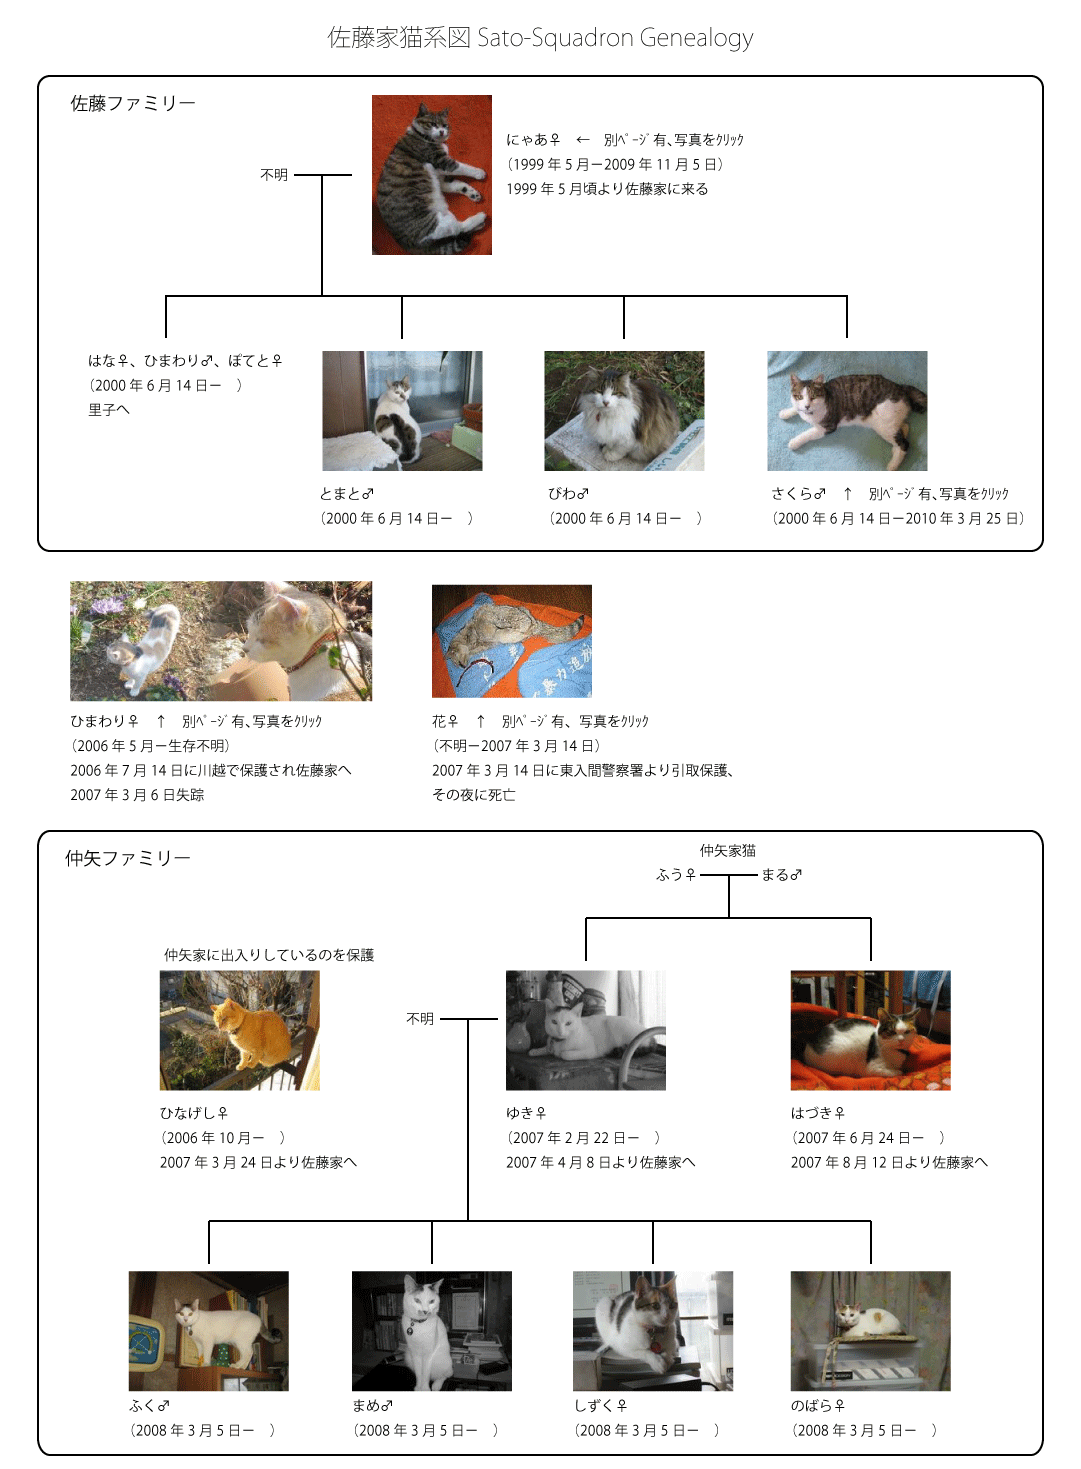 Sato-Squadron Genealogy